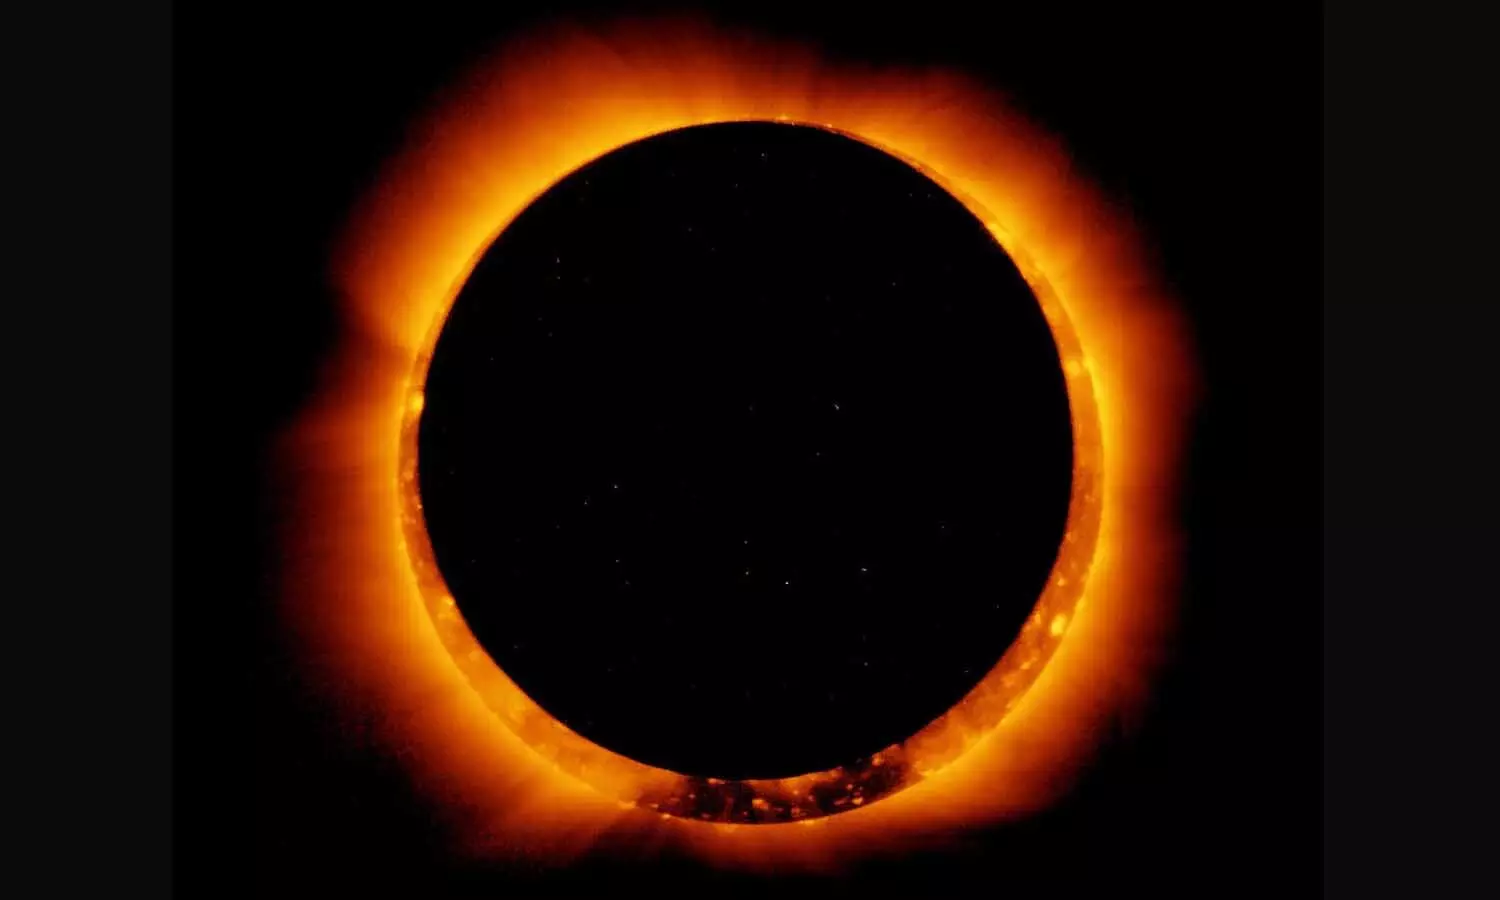 Surya Grahan Live Photos: दुनियाभर से सूर्य ग्रहण की तस्वीरें आई सामने, देखें ग्रहण 2021 की फ़ोटो